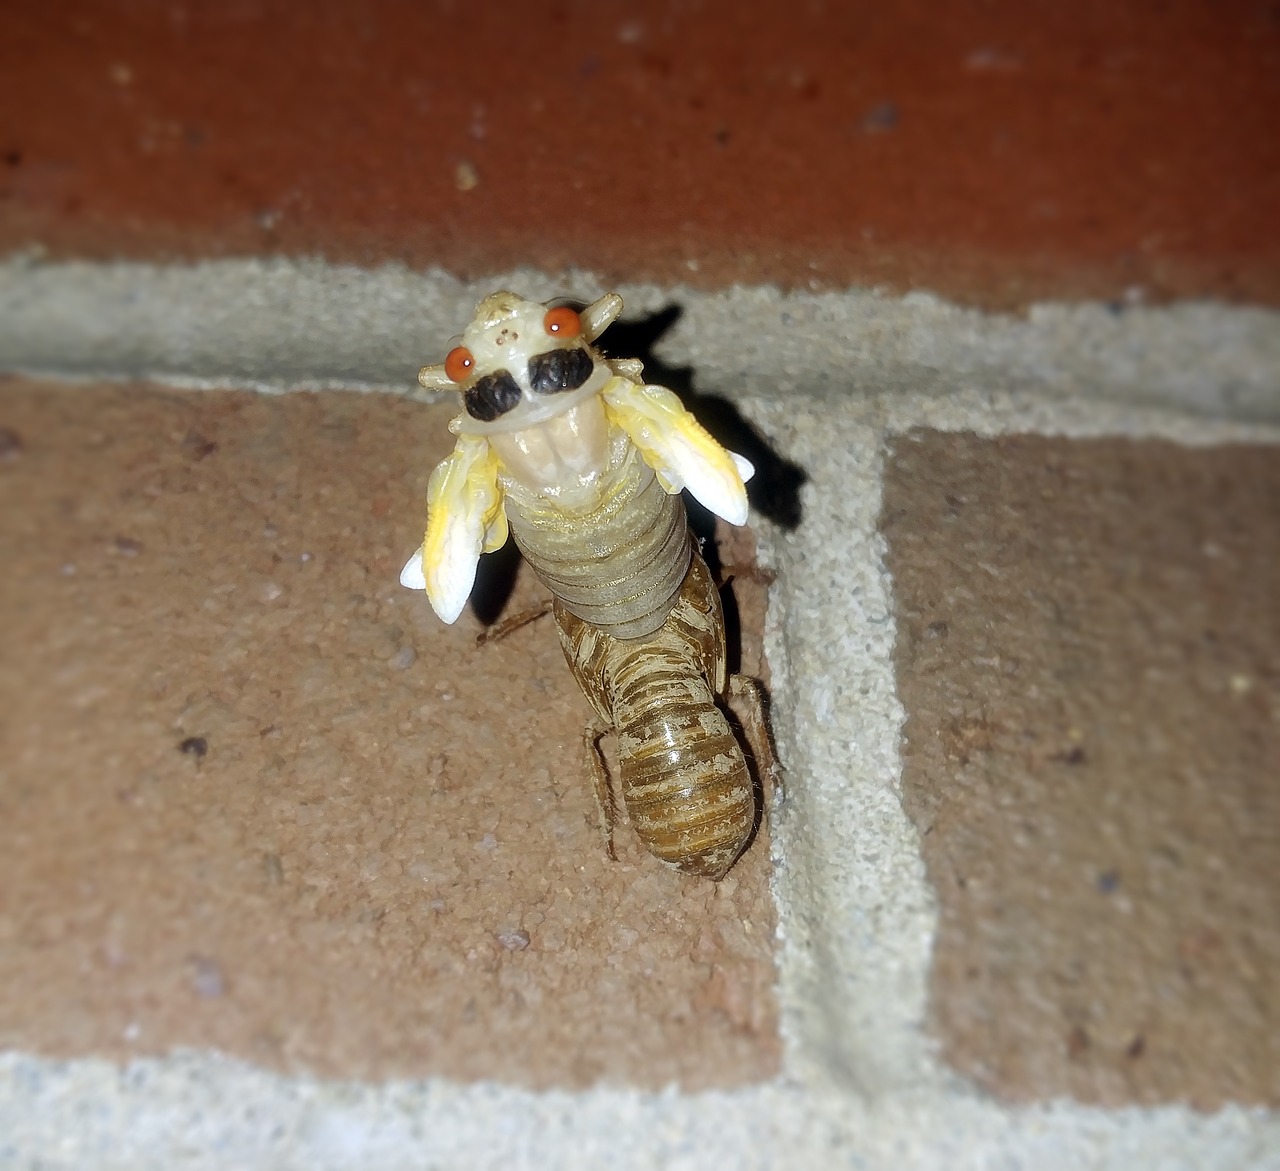 cicada periodical cicadas insect free photo